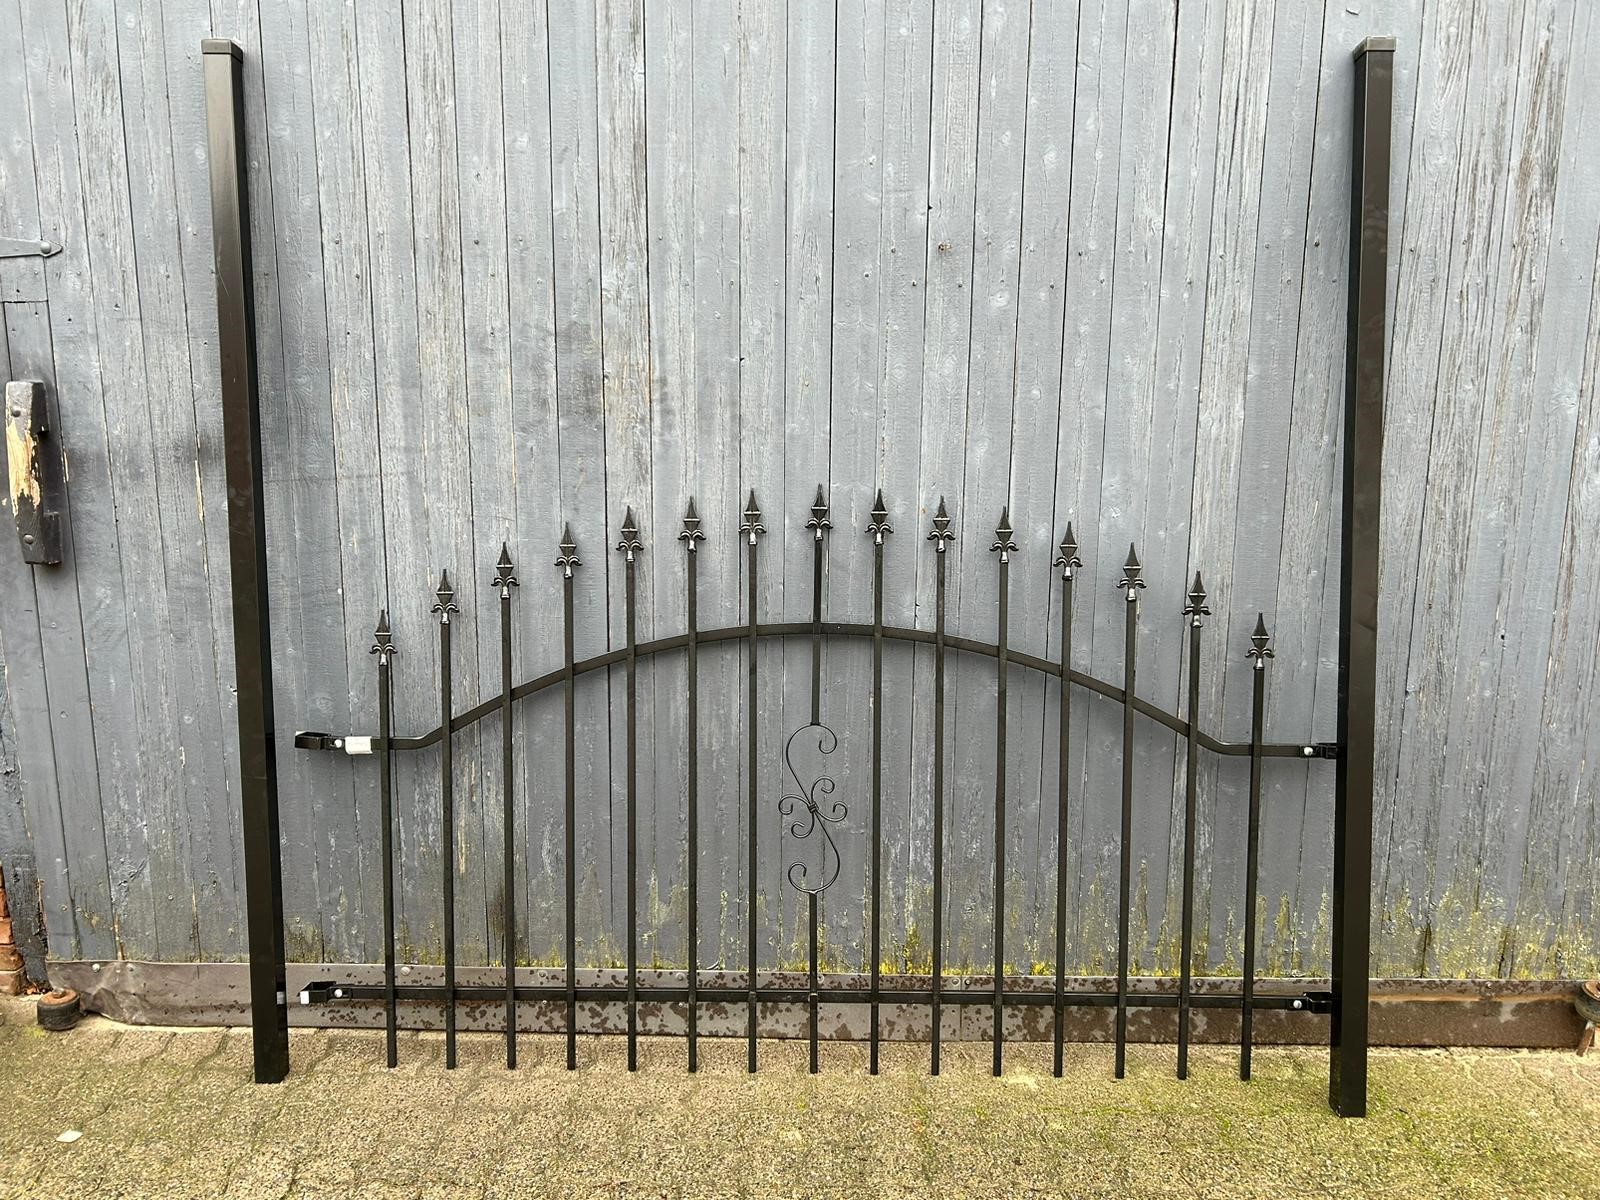 Ornamental fencing - garden fence - powder-coated black